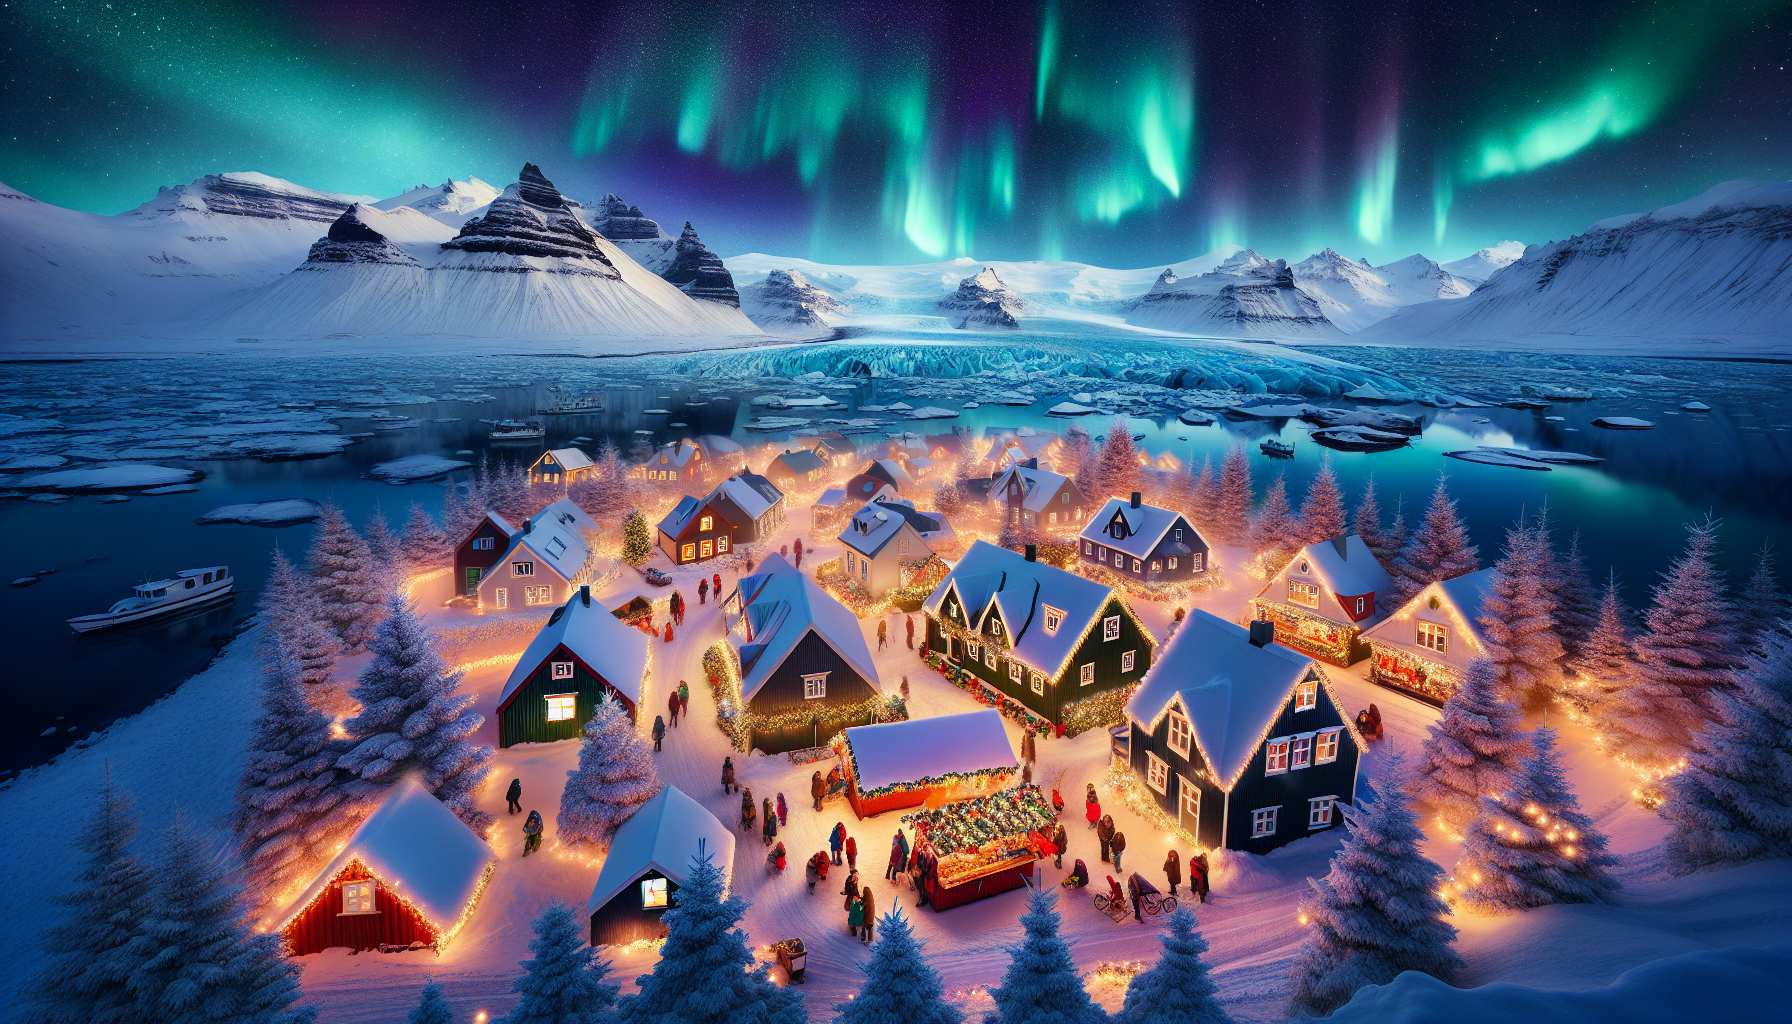 Islandia en diciembre con auroras boreales y mercado navideño